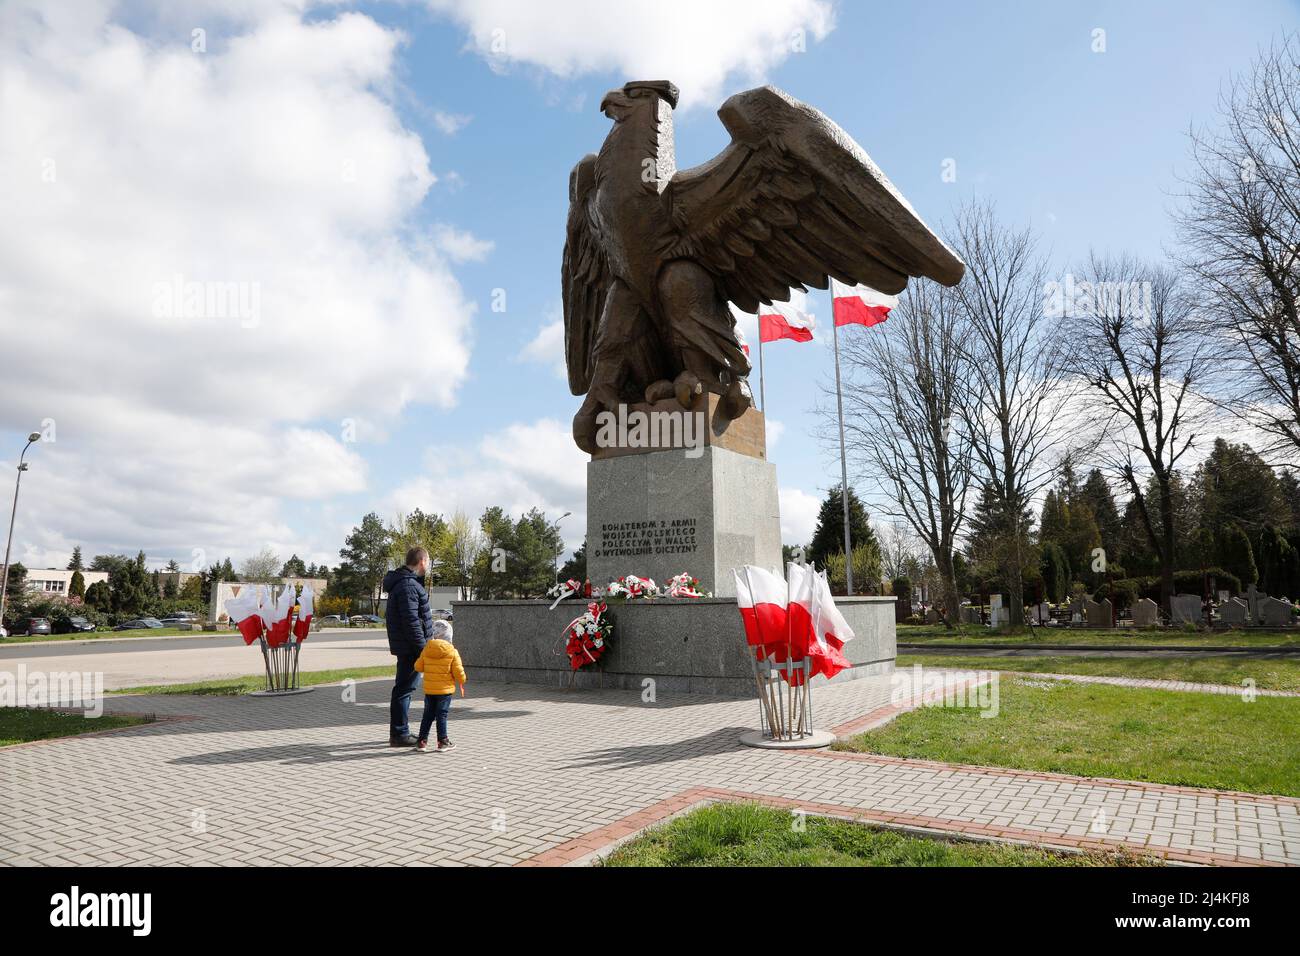 Kranzniederlegung zum 77. Jahrestag der Überwindung der Lausitzer Neiße am Adlerdenkmal auf dem Soldatenfriedhof der 2. polnischen Armee in Zgorzelec, Stock Photo